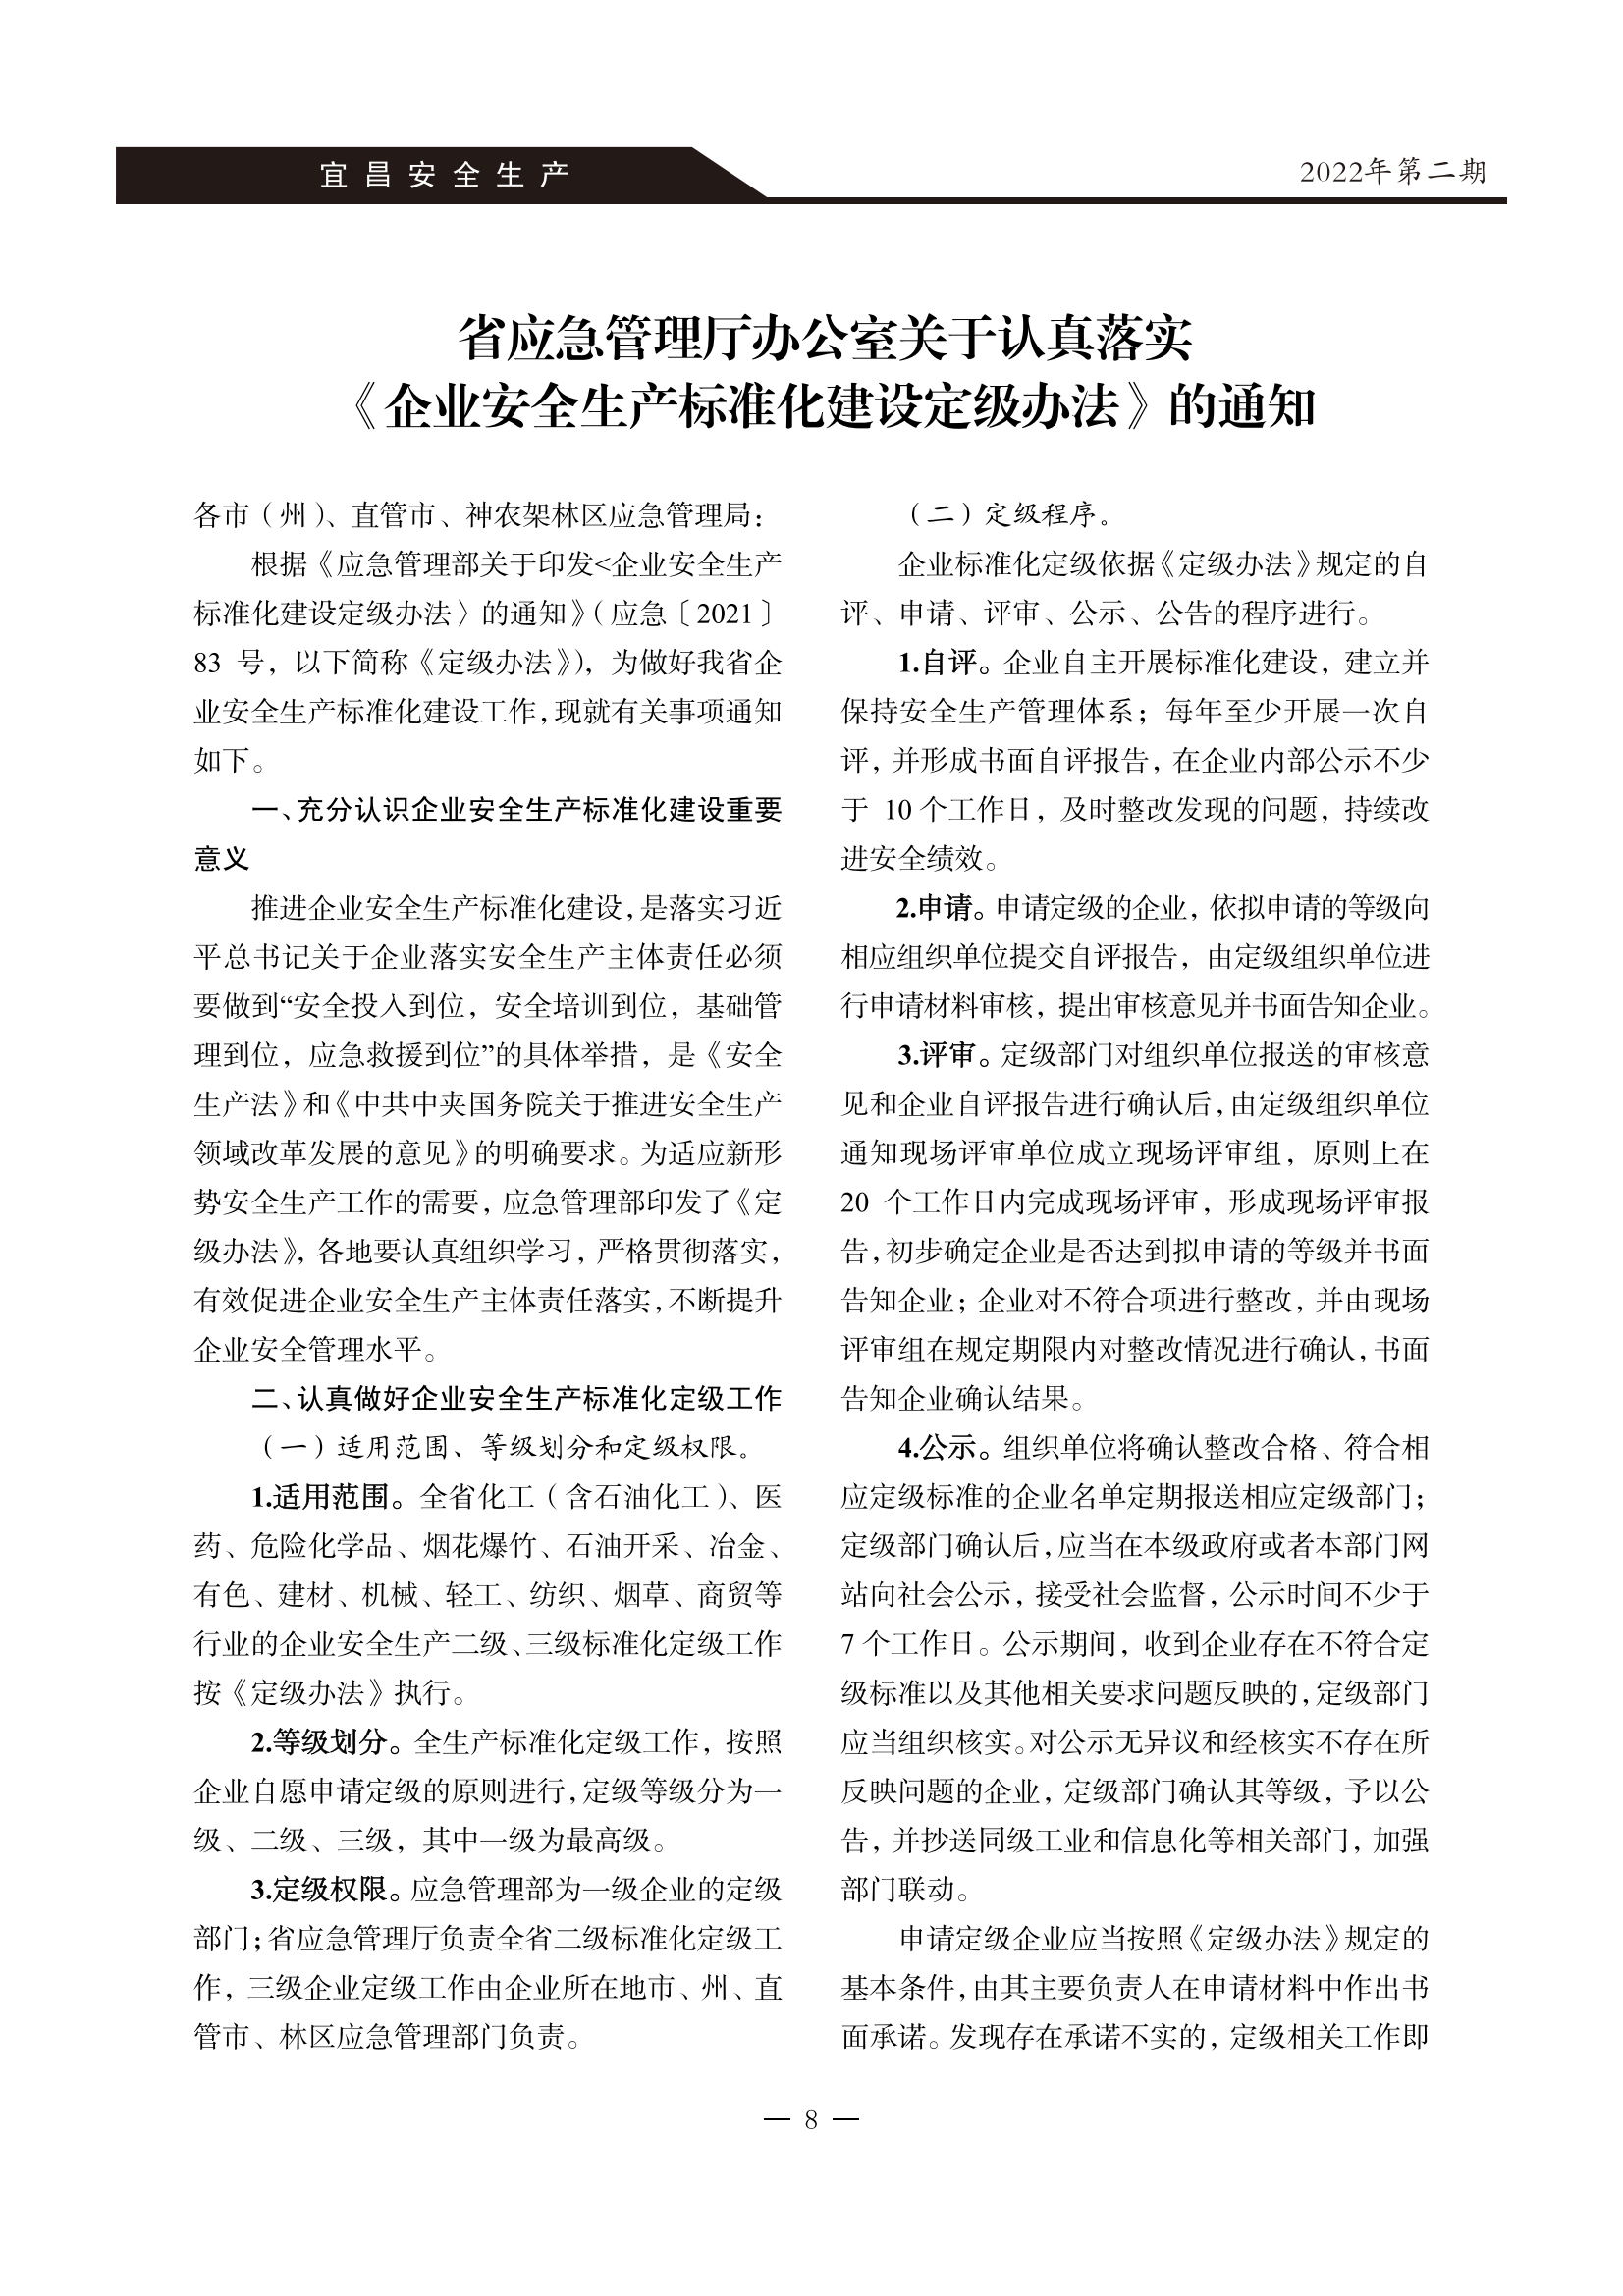 宜昌安全生产期刊第二期_10.png